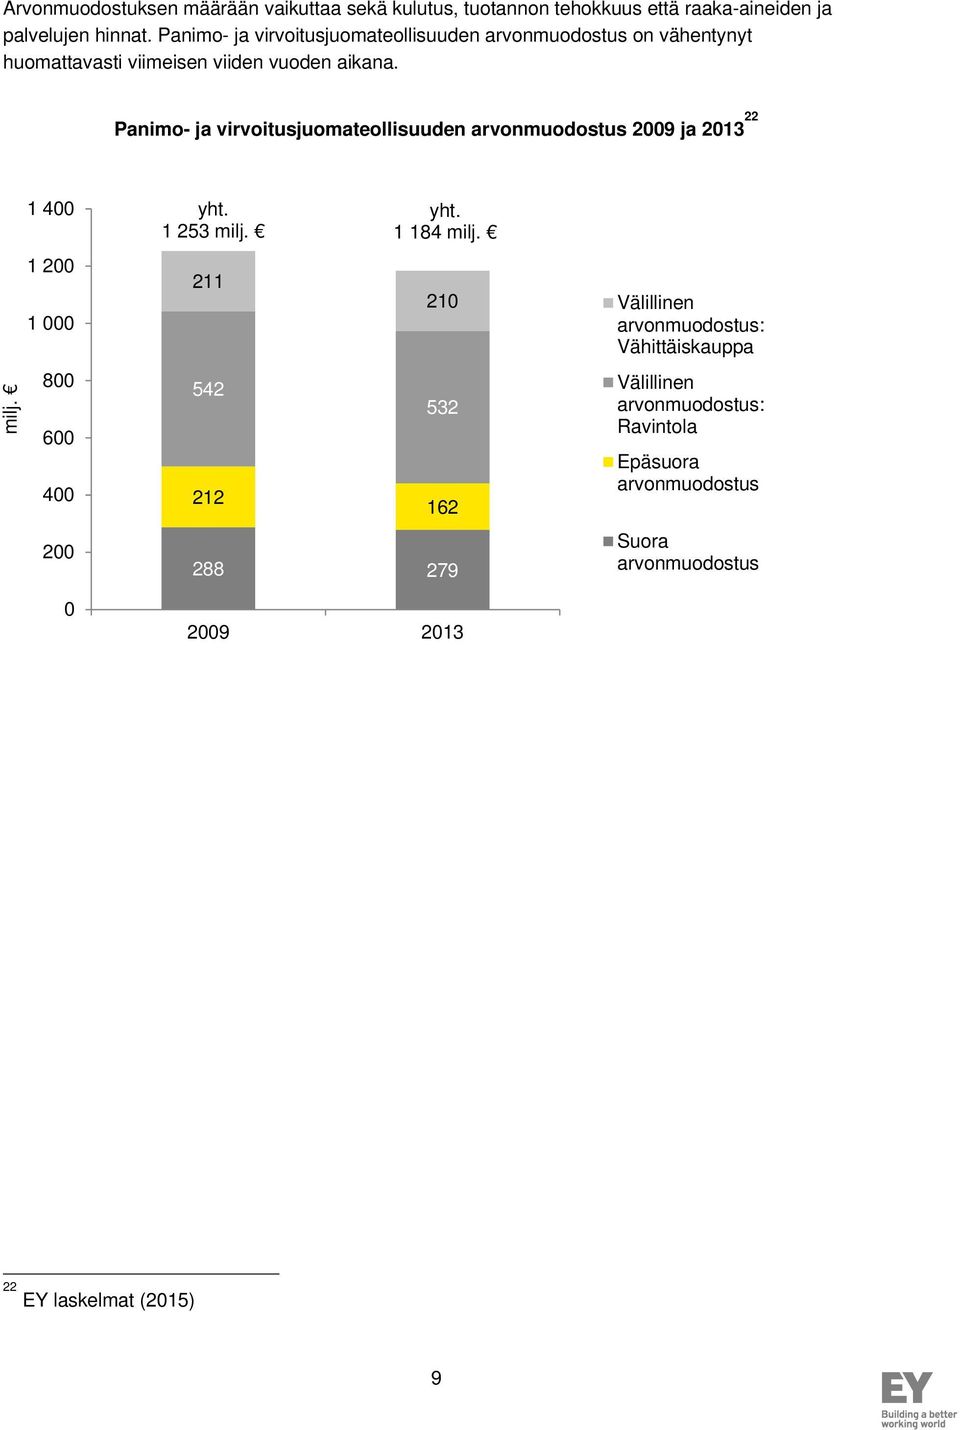 Panimo- ja virvoitusjuomateollisuuden arvonmuodostus 2009 ja 2013 22 milj. 1 400 1 200 1 000 800 600 400 200 0 yht. 1 253 milj.